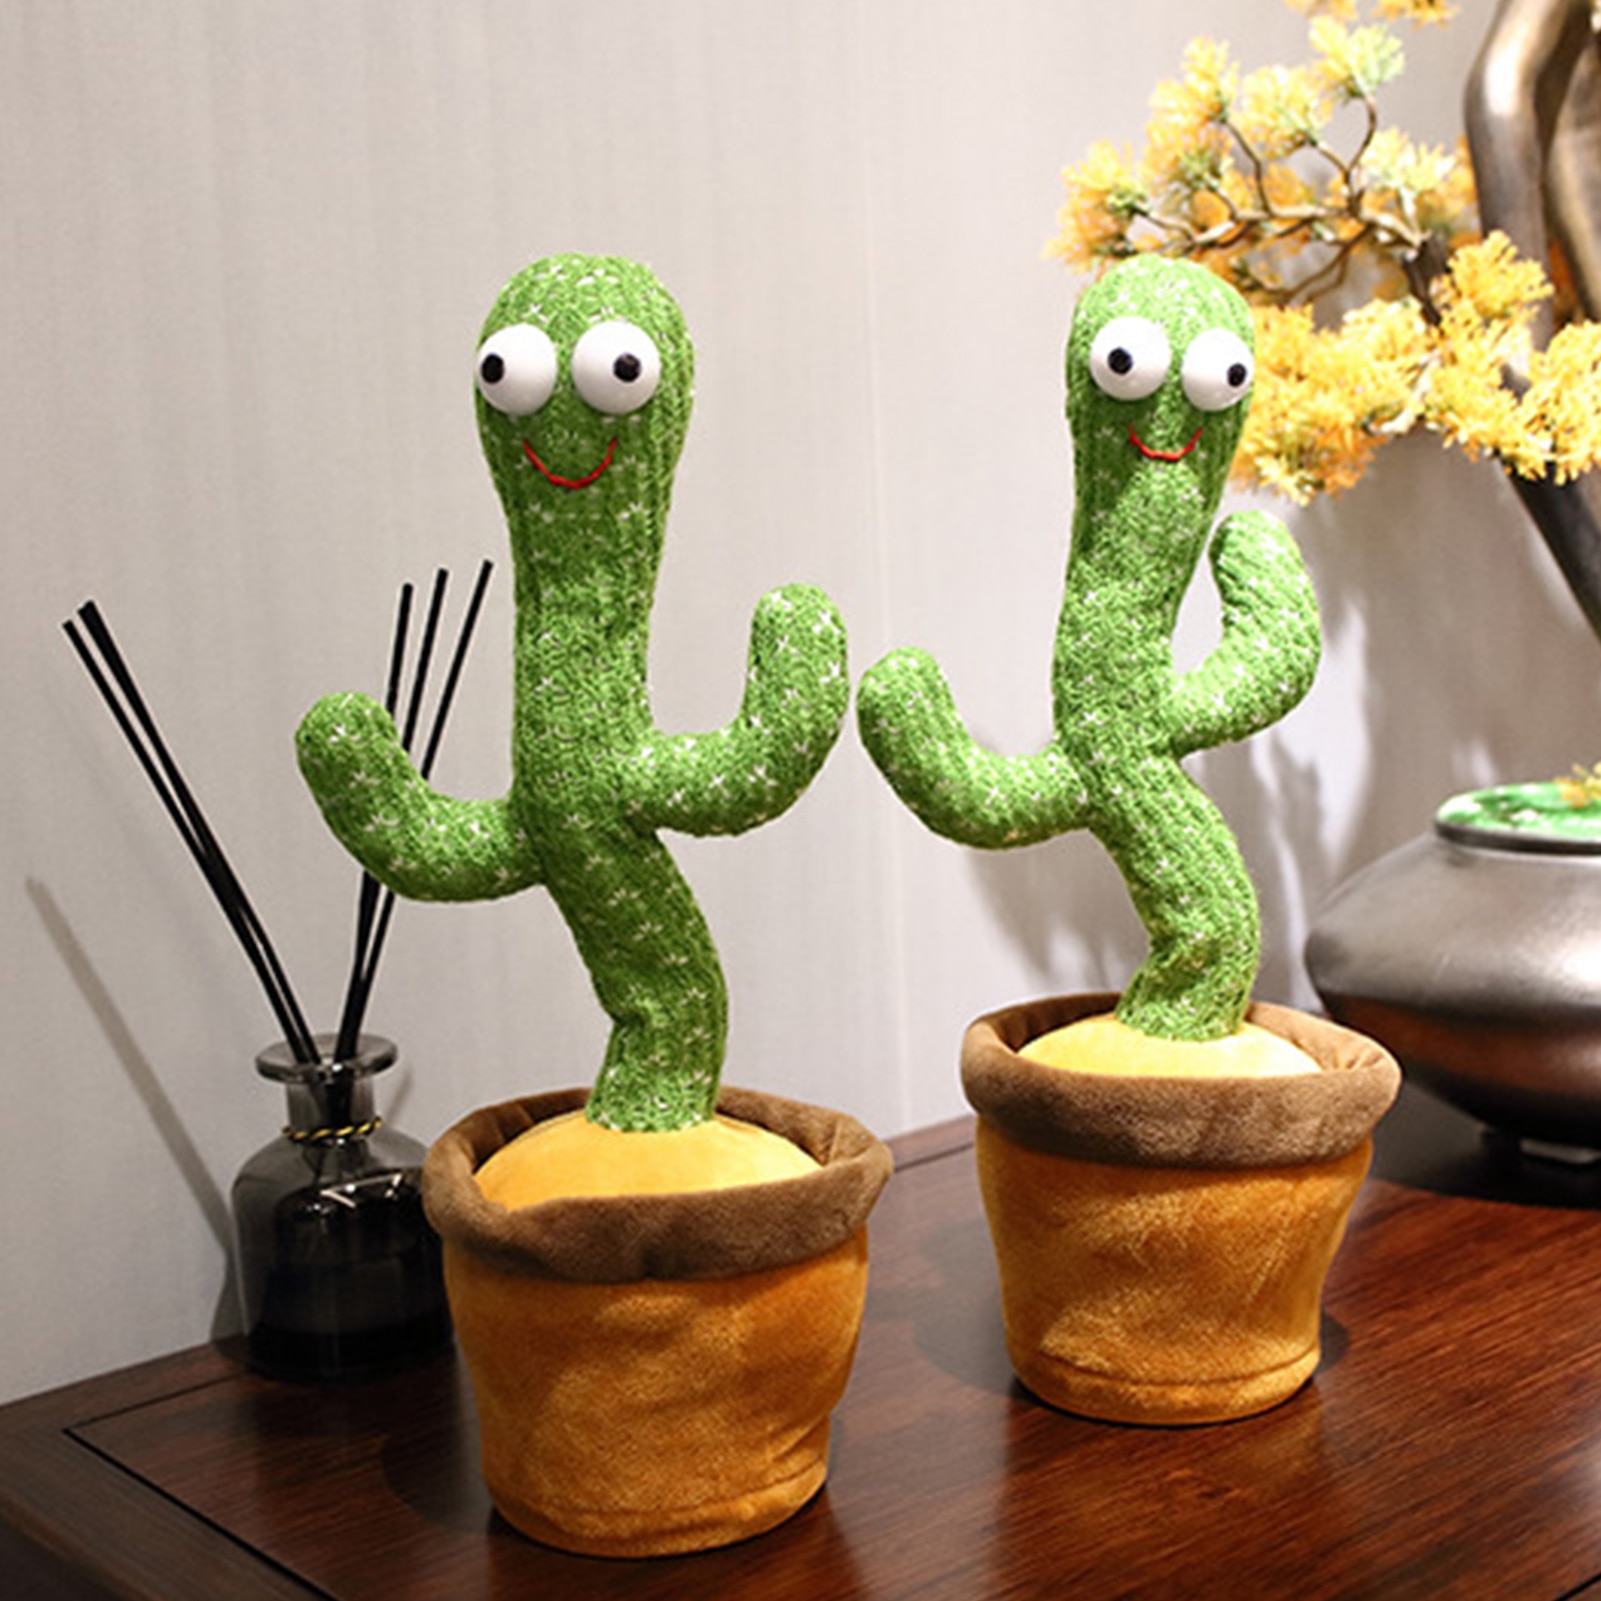 【COD】 dancecactus 'Cactus Đồ chơi sang trọng Đồ chơi điện tử Lắc nhảy Với bài hát Sang trọng Dễ thương Khiêu vũ Cactus Đồ chơi giáo dục mầm non cho trẻ em Phát Ra Âm Thanh Vui Nhộn Cho Bé